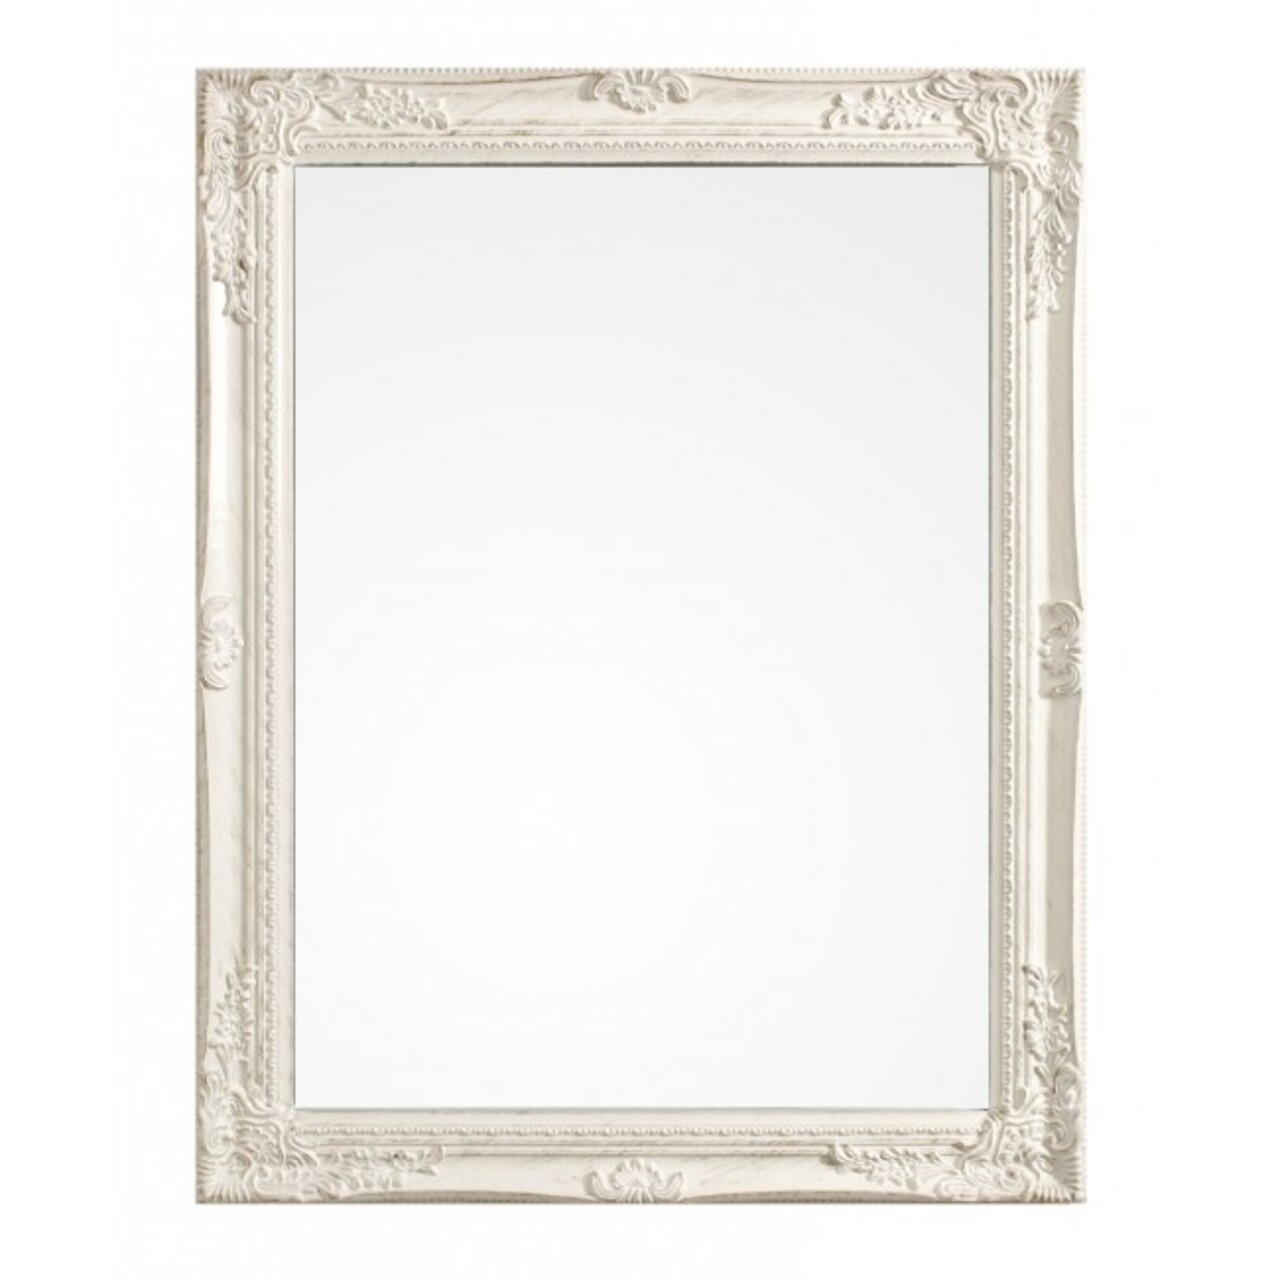 Miro Dísz tükör, Bizzotto, 62x82 cm, császárfa, fehér